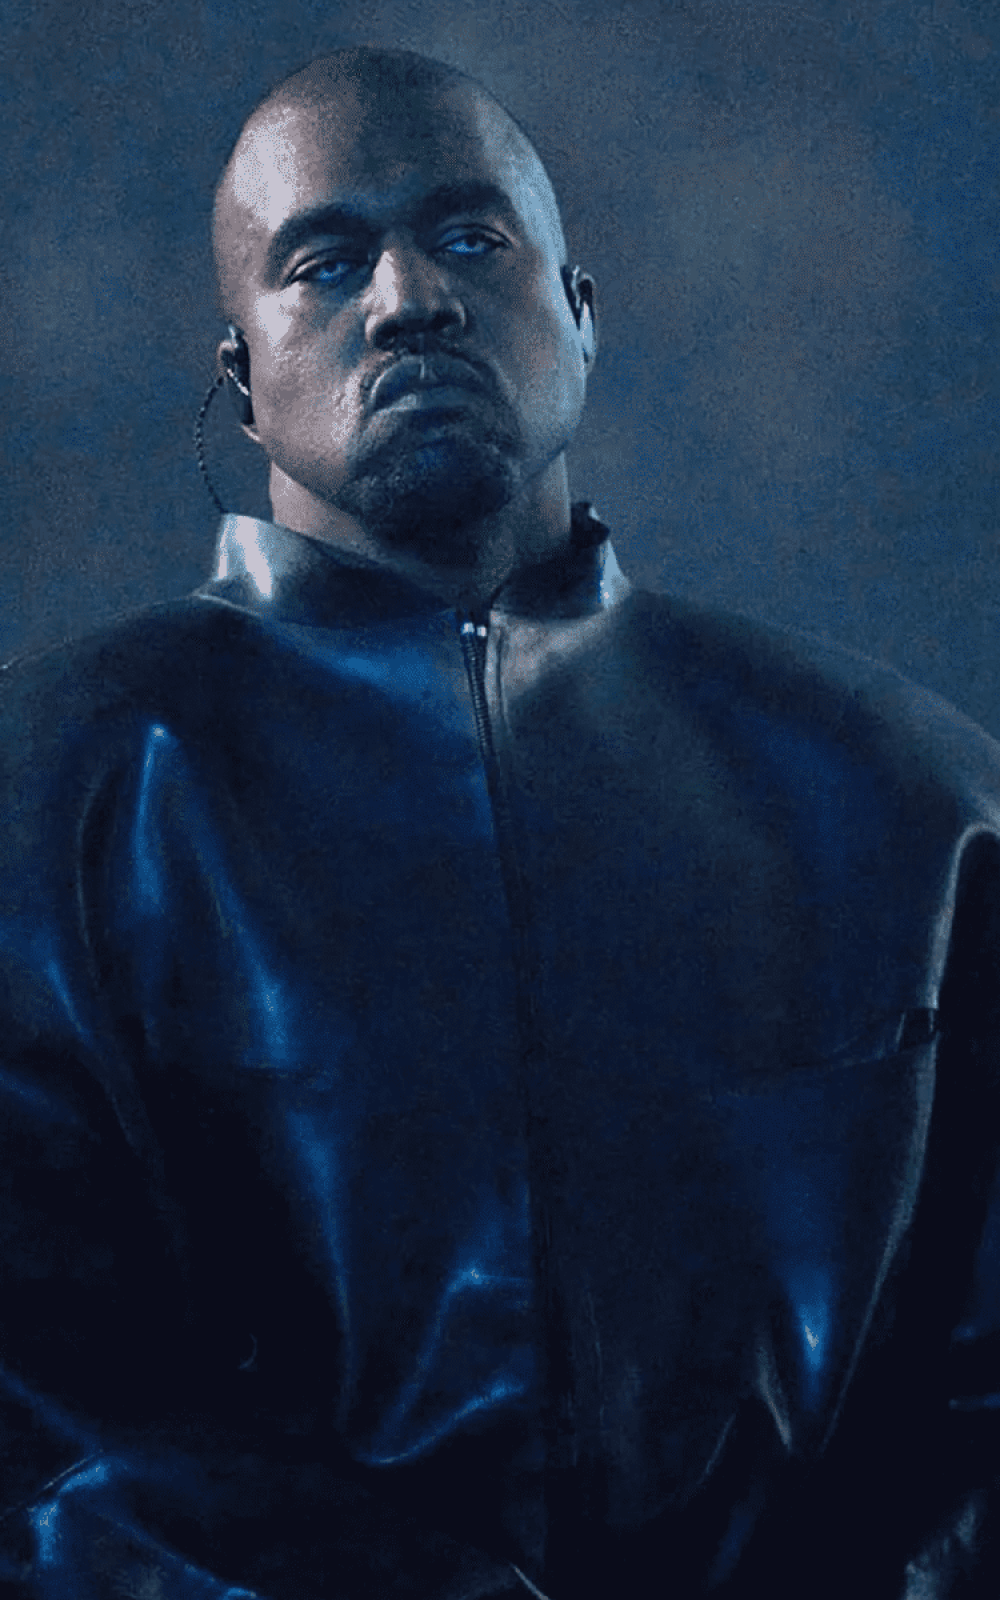 Kanye West Donda-2 Press Image